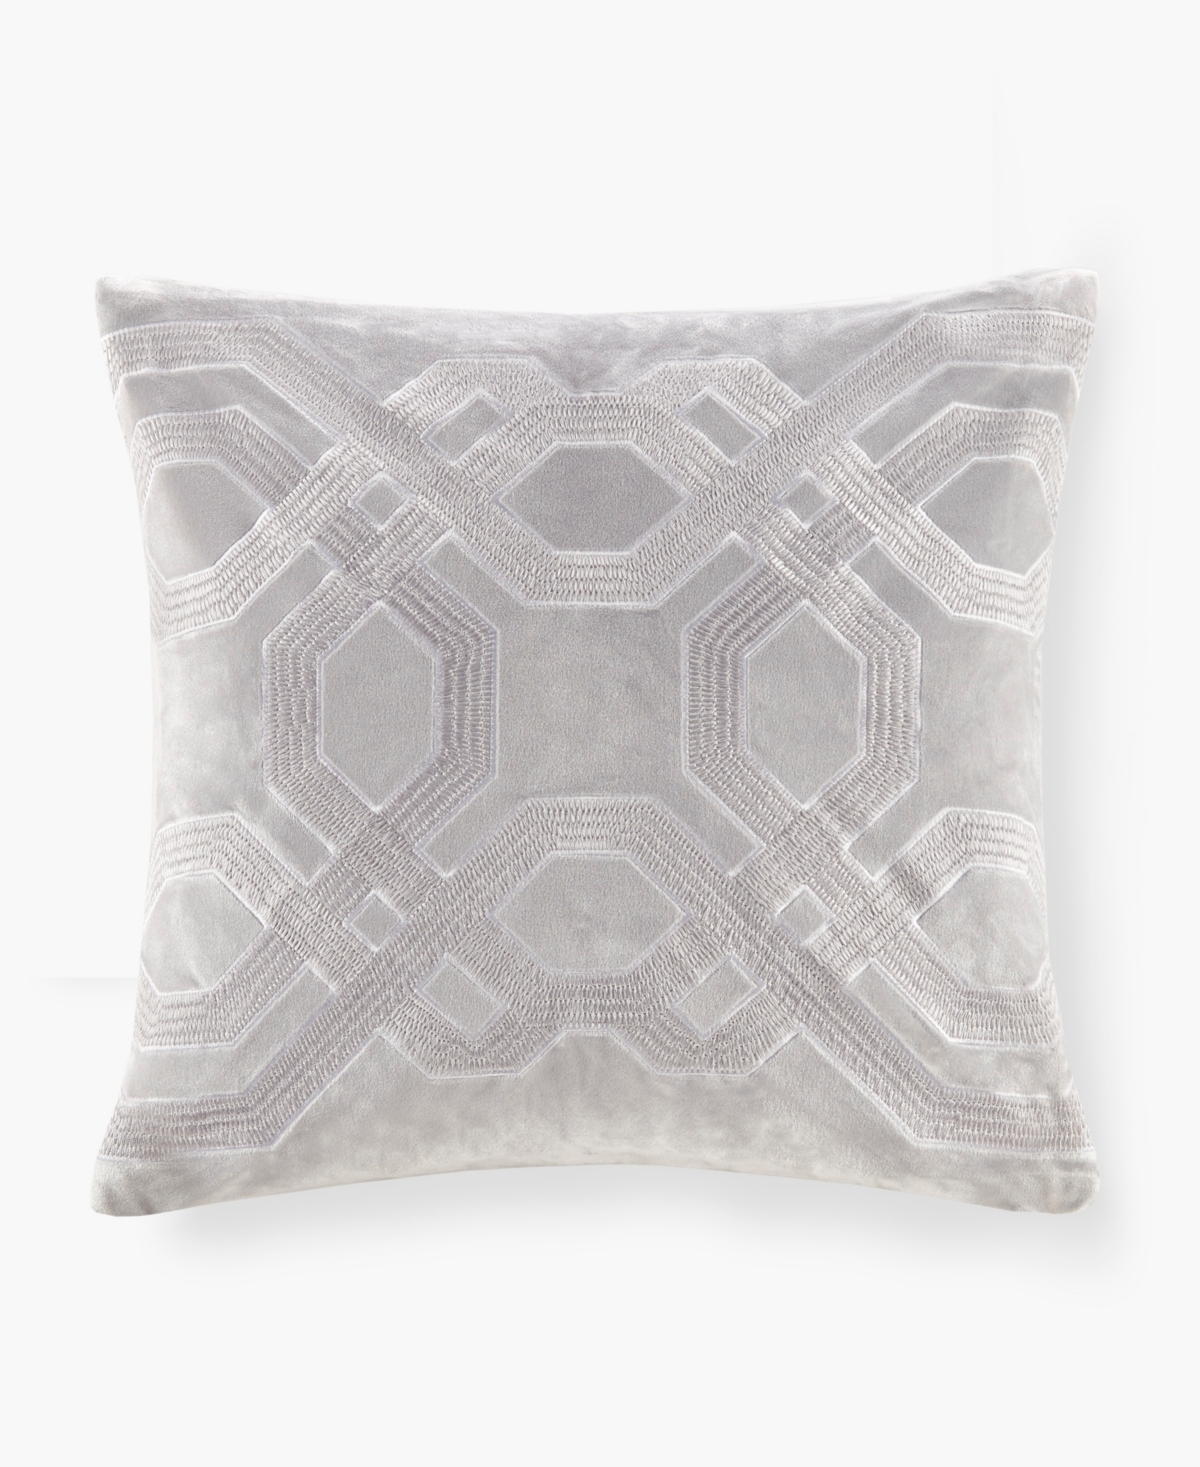 Croscill Biron Square Decorative Pillow, 18" X 18" In Silver